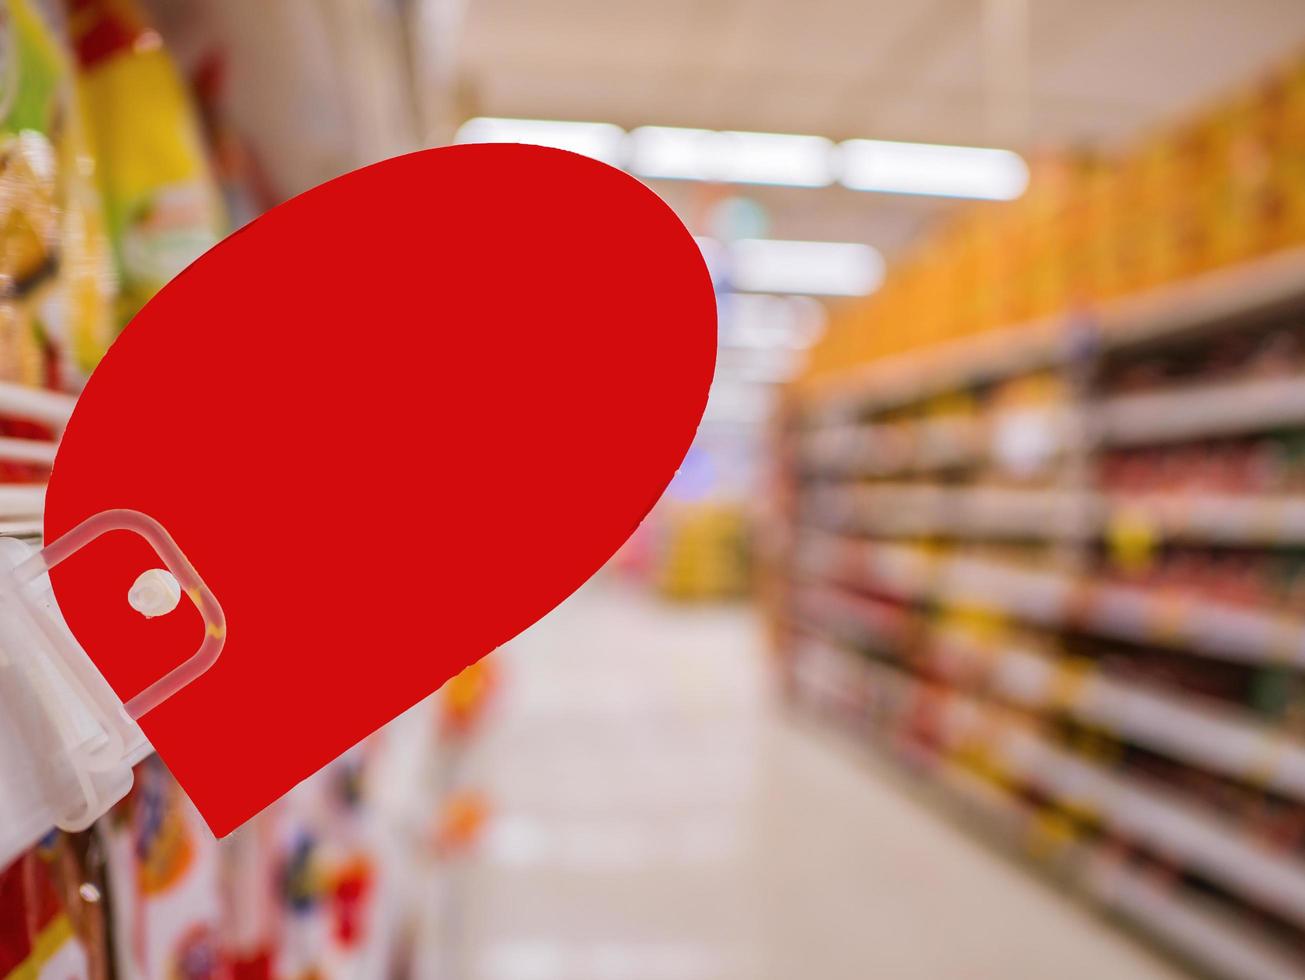 mock-up leeres rotes rabattschild auf den produktregalen im supermarkt foto